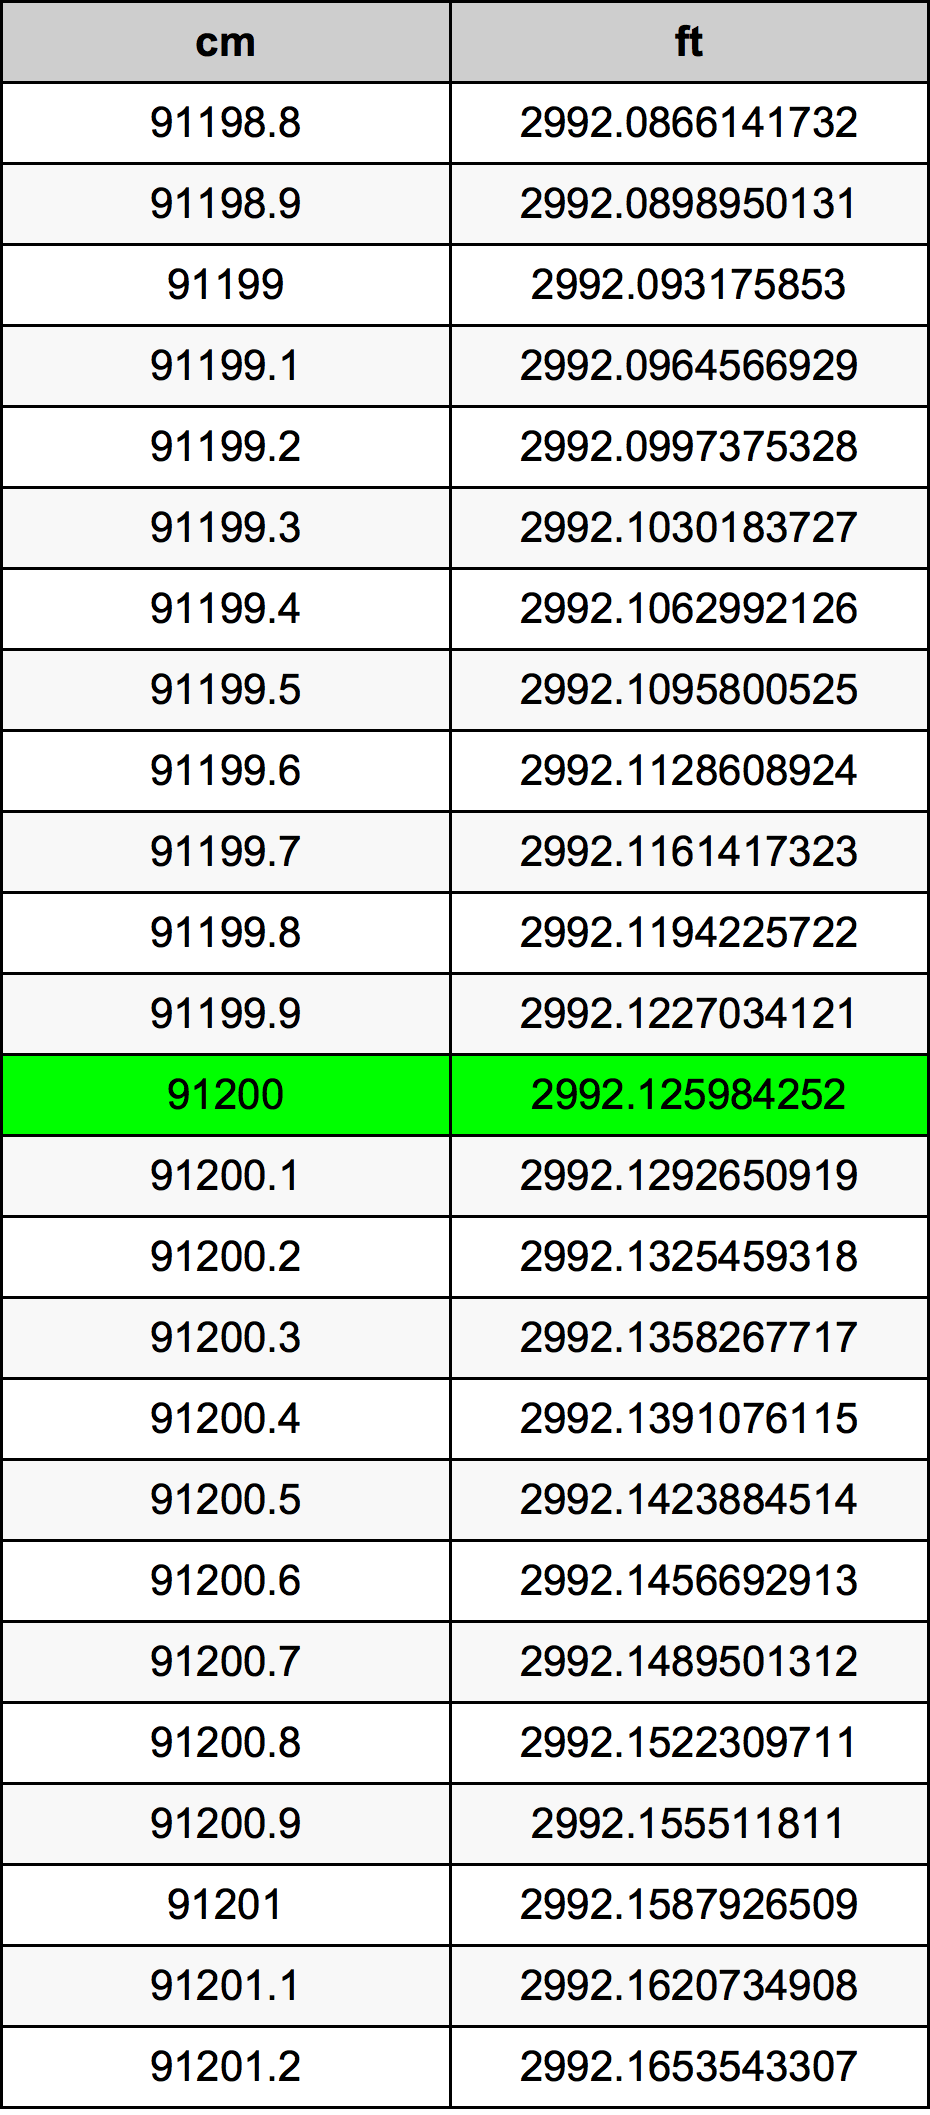 91200 Centiméter átszámítási táblázat